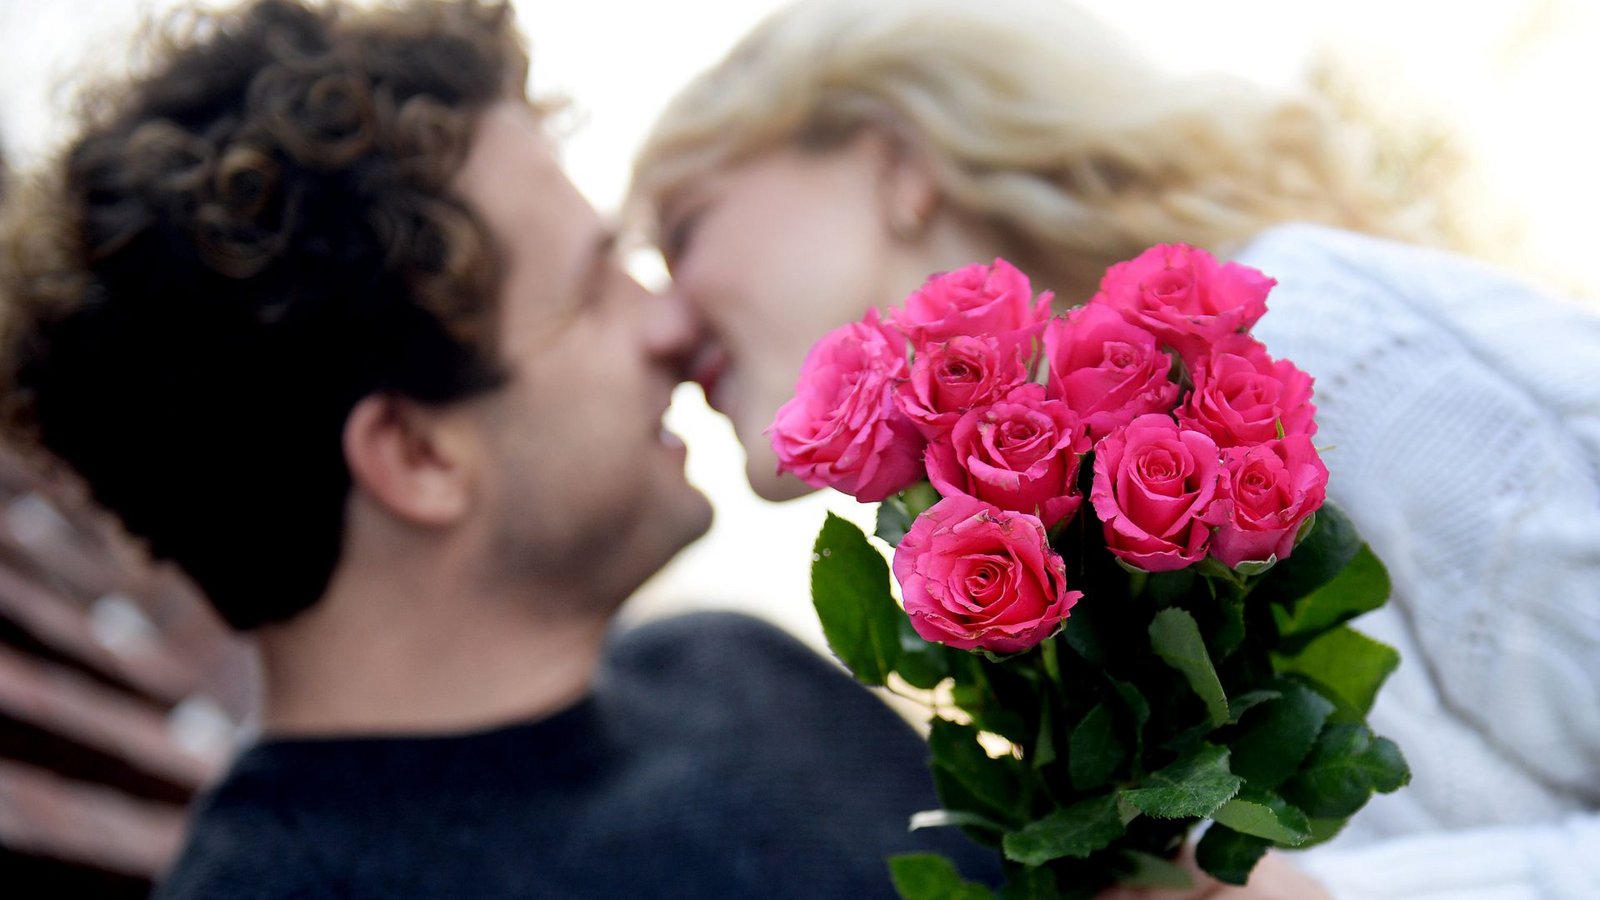 Am Valentinstag wird traditionell die Liebe gefeiert.Foto: dpa/Susann Prautsch